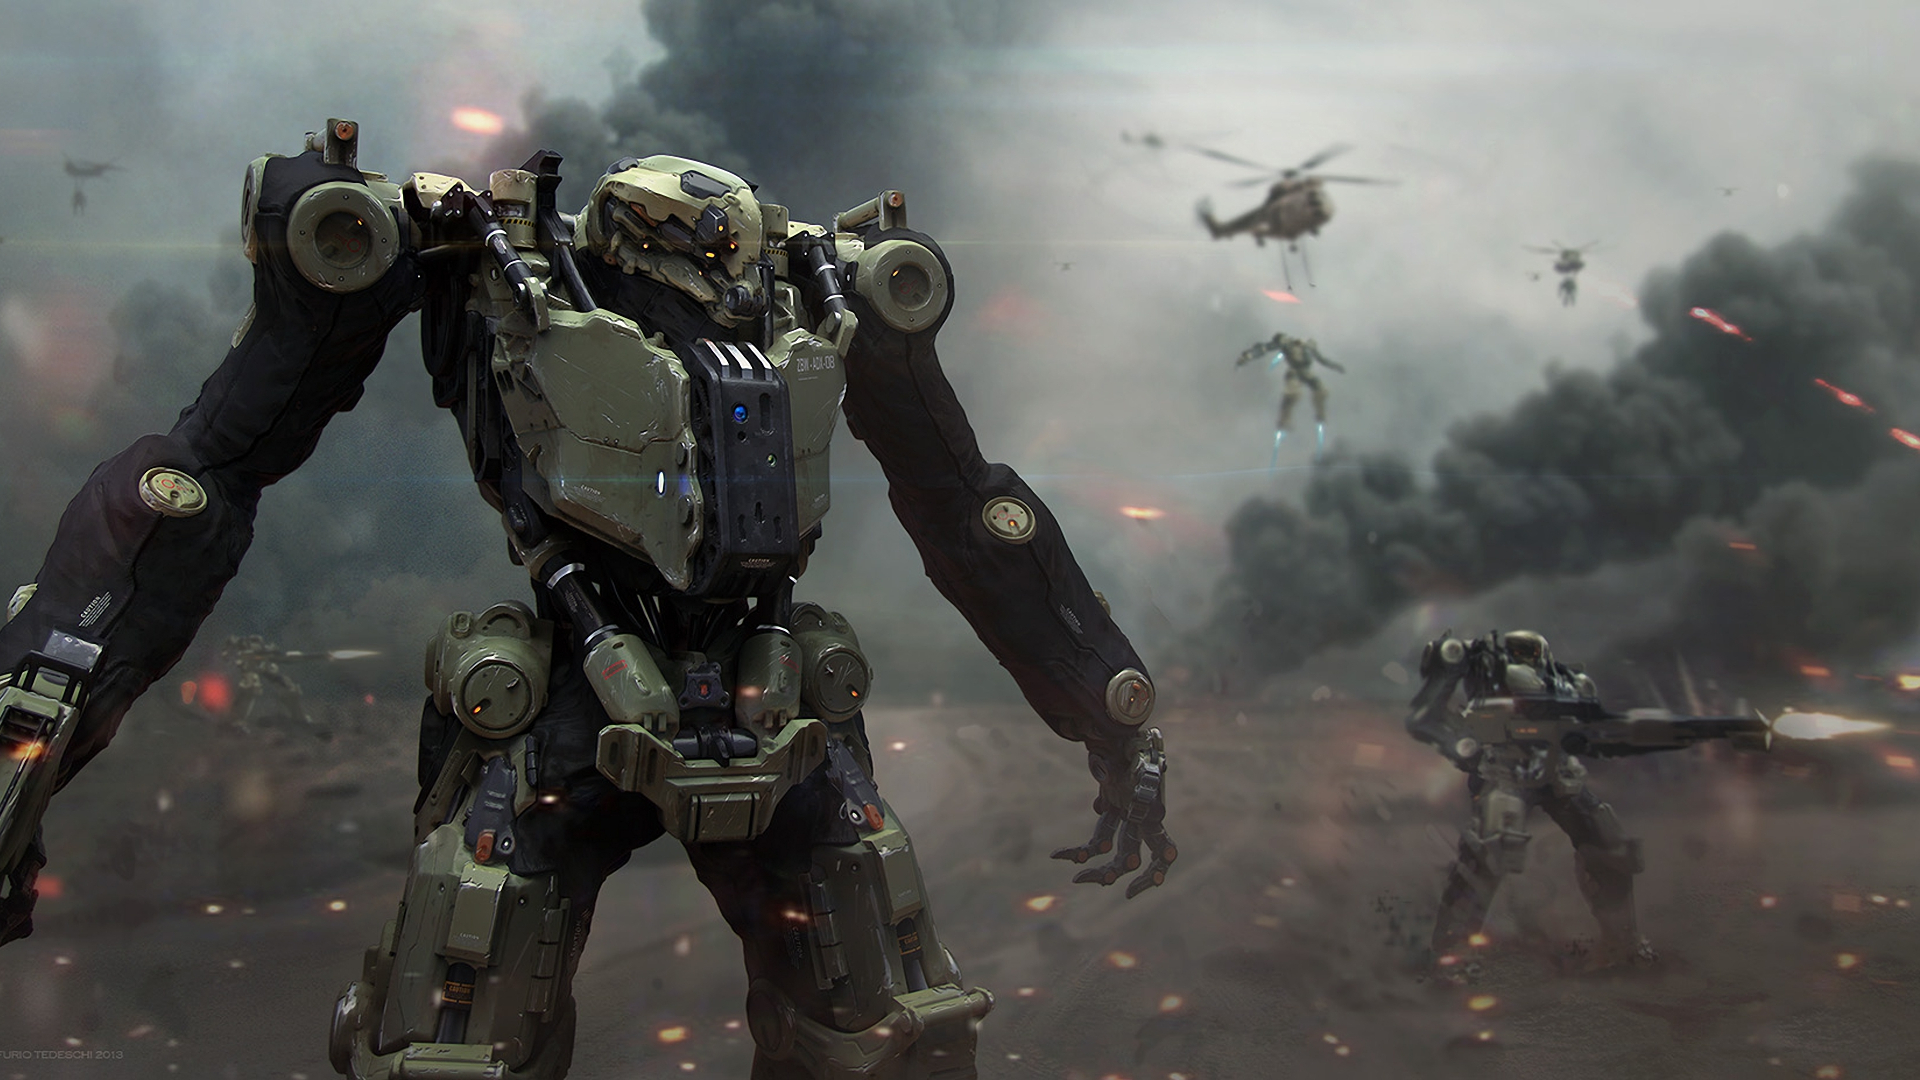 Warrior Battle Robot Smoke Mecha Wallpaper - Robots War , HD Wallpaper & Backgrounds